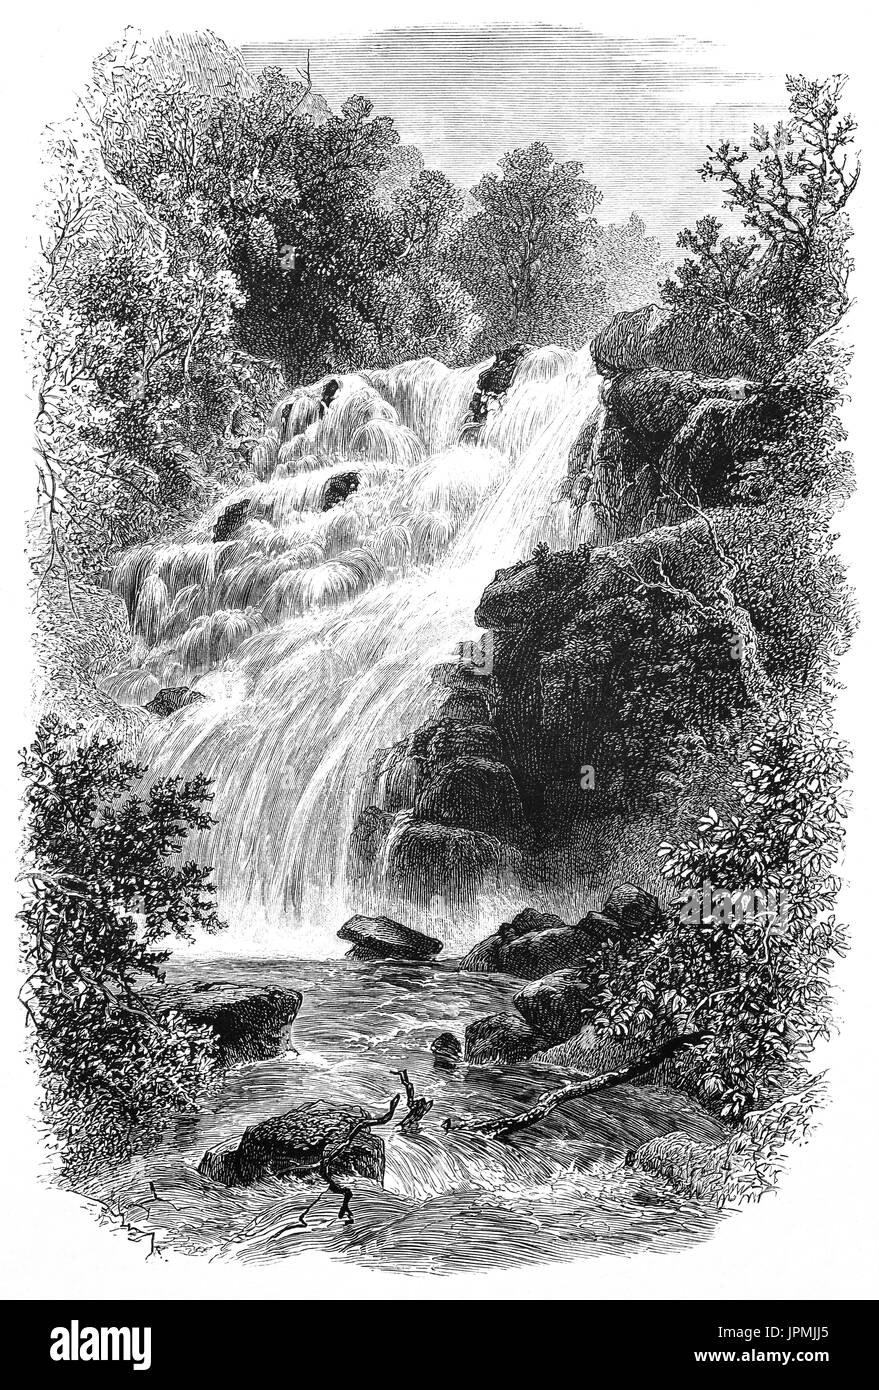 1870: Torc Wasserfall oder Torc Kaskaden ist ein Wasserfall des Flusses "Owengarriff" an der Basis der Torc Berg, in der Nähe von Killarney in den Ring of Kerry, im Killarney National Park, County Kerry, Irland. Stockfoto